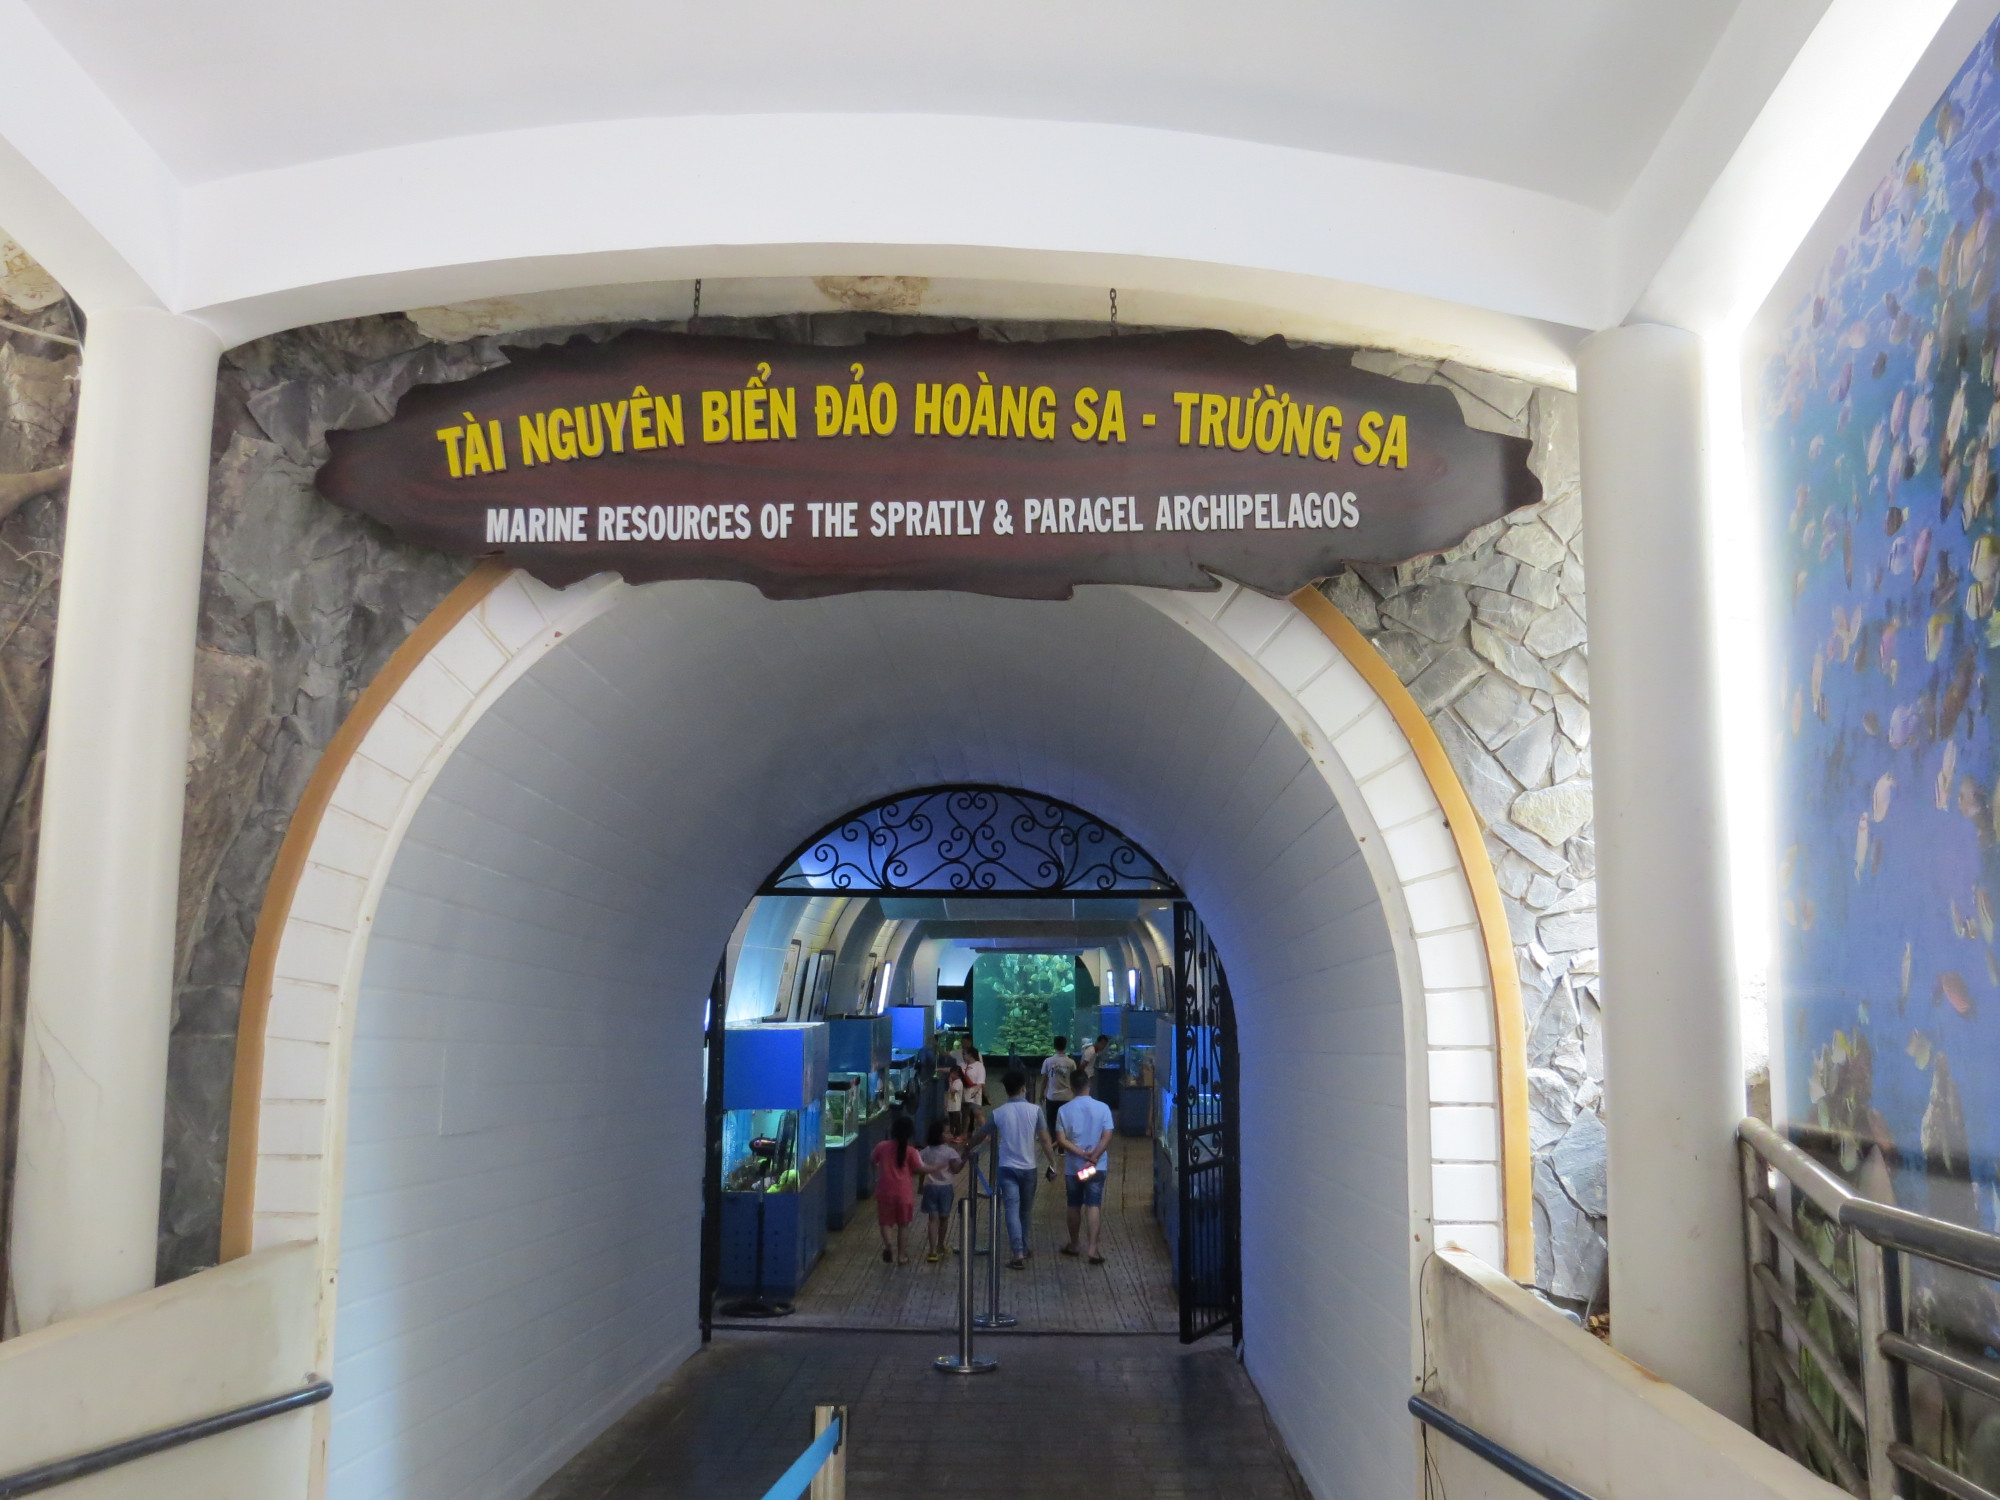 Khu trưng bày tài nguyên biển đảo Hoàng Sa – Trường Sa được đặt trong đường hầm xuyên qua núi Cảnh Long (Bảo Đại). Trải qua nhiều khó khăn trong quá trình thực hiện, đến tháng 9/2022, khu trưng bày đã hoàn thiện với chiều dài 120m, cao 5m và rộng 8-12m.